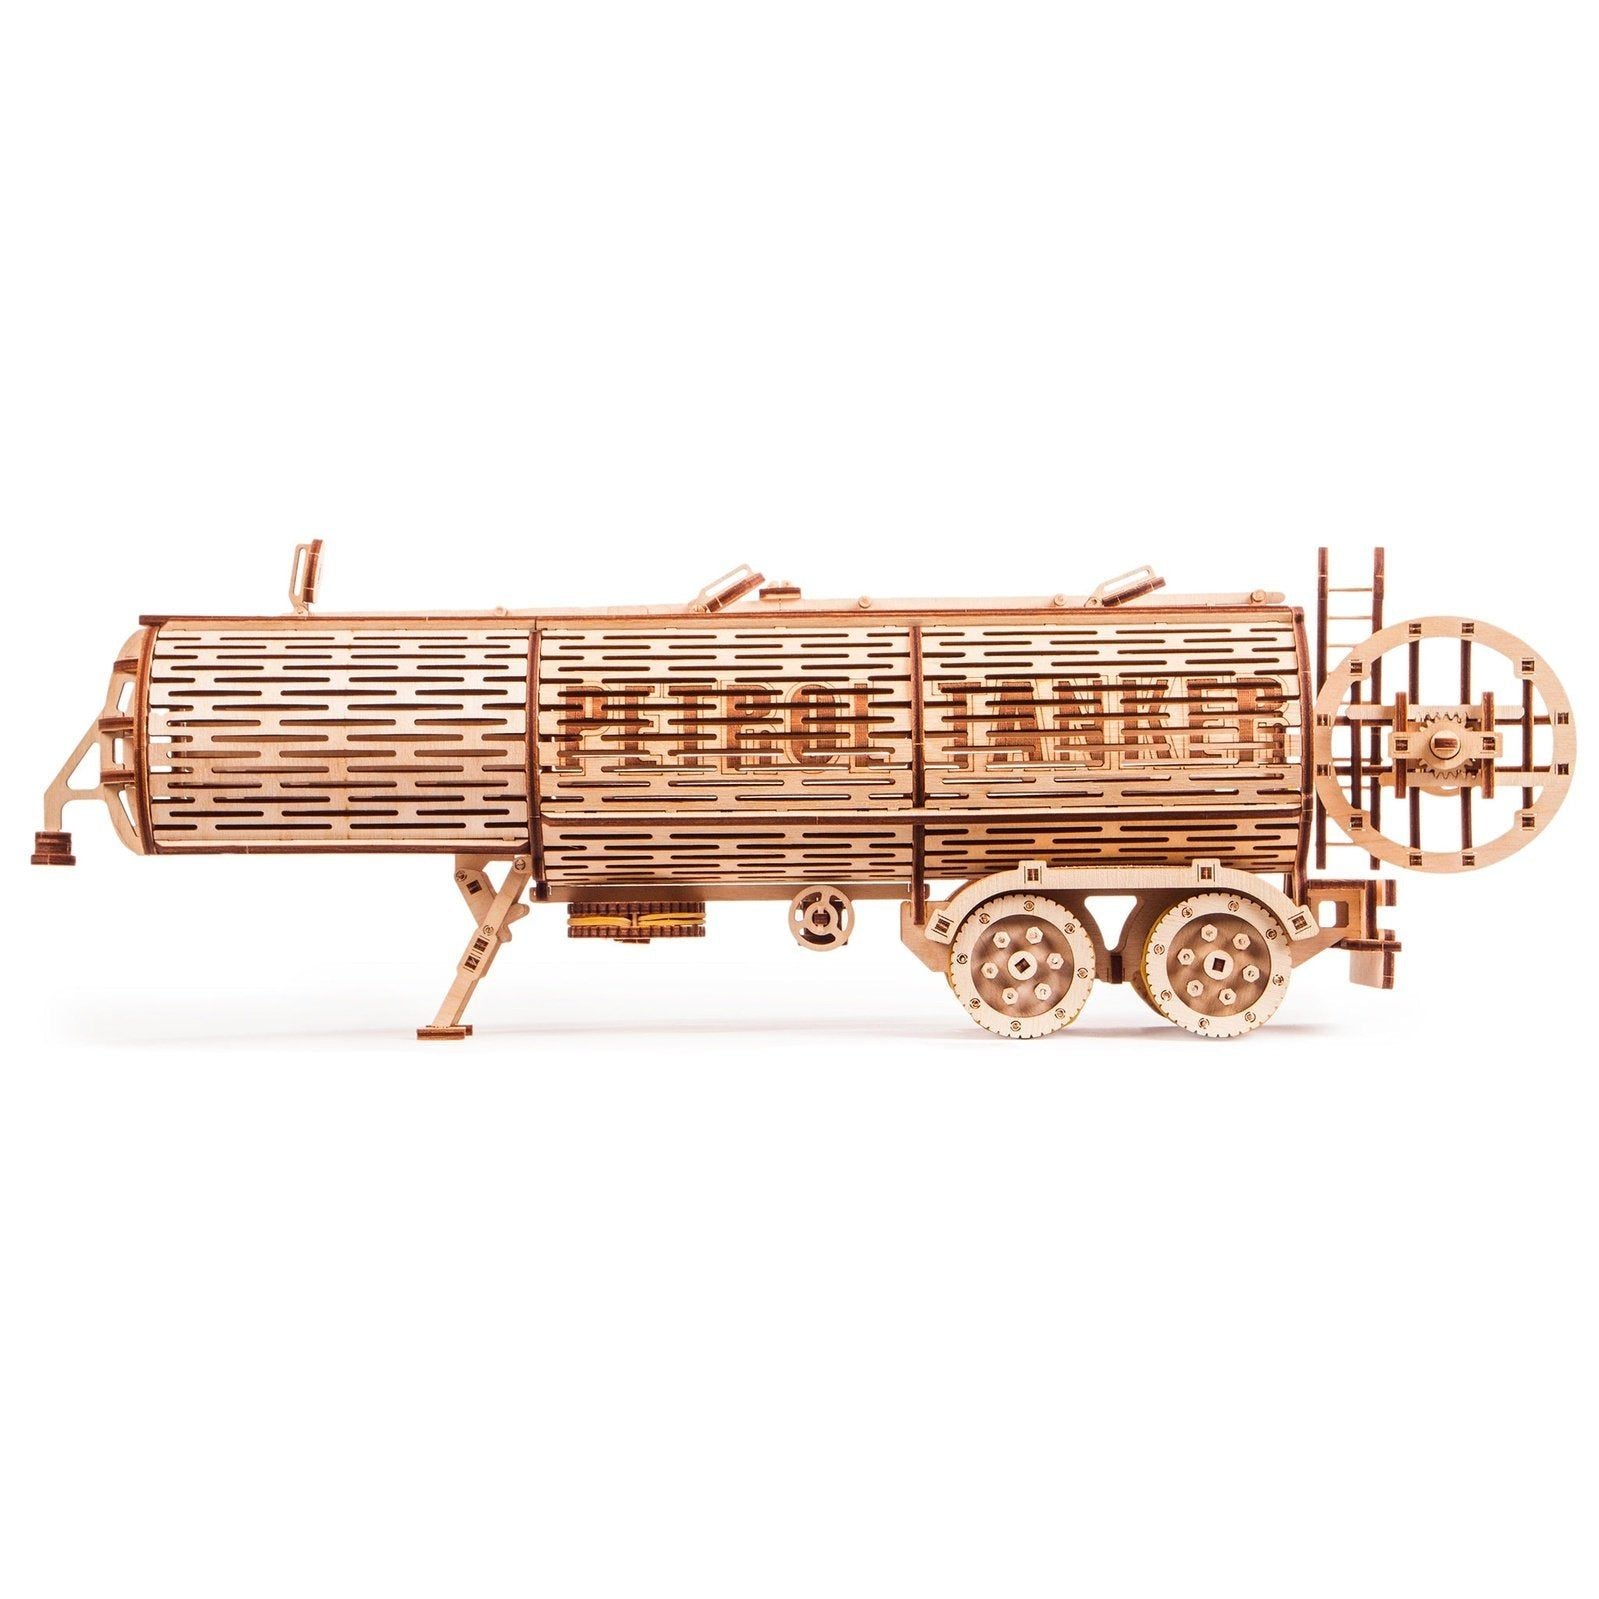 Wood Trick Tank Trailer Uitbreiding Set voor Truck - Houten Modelbouw